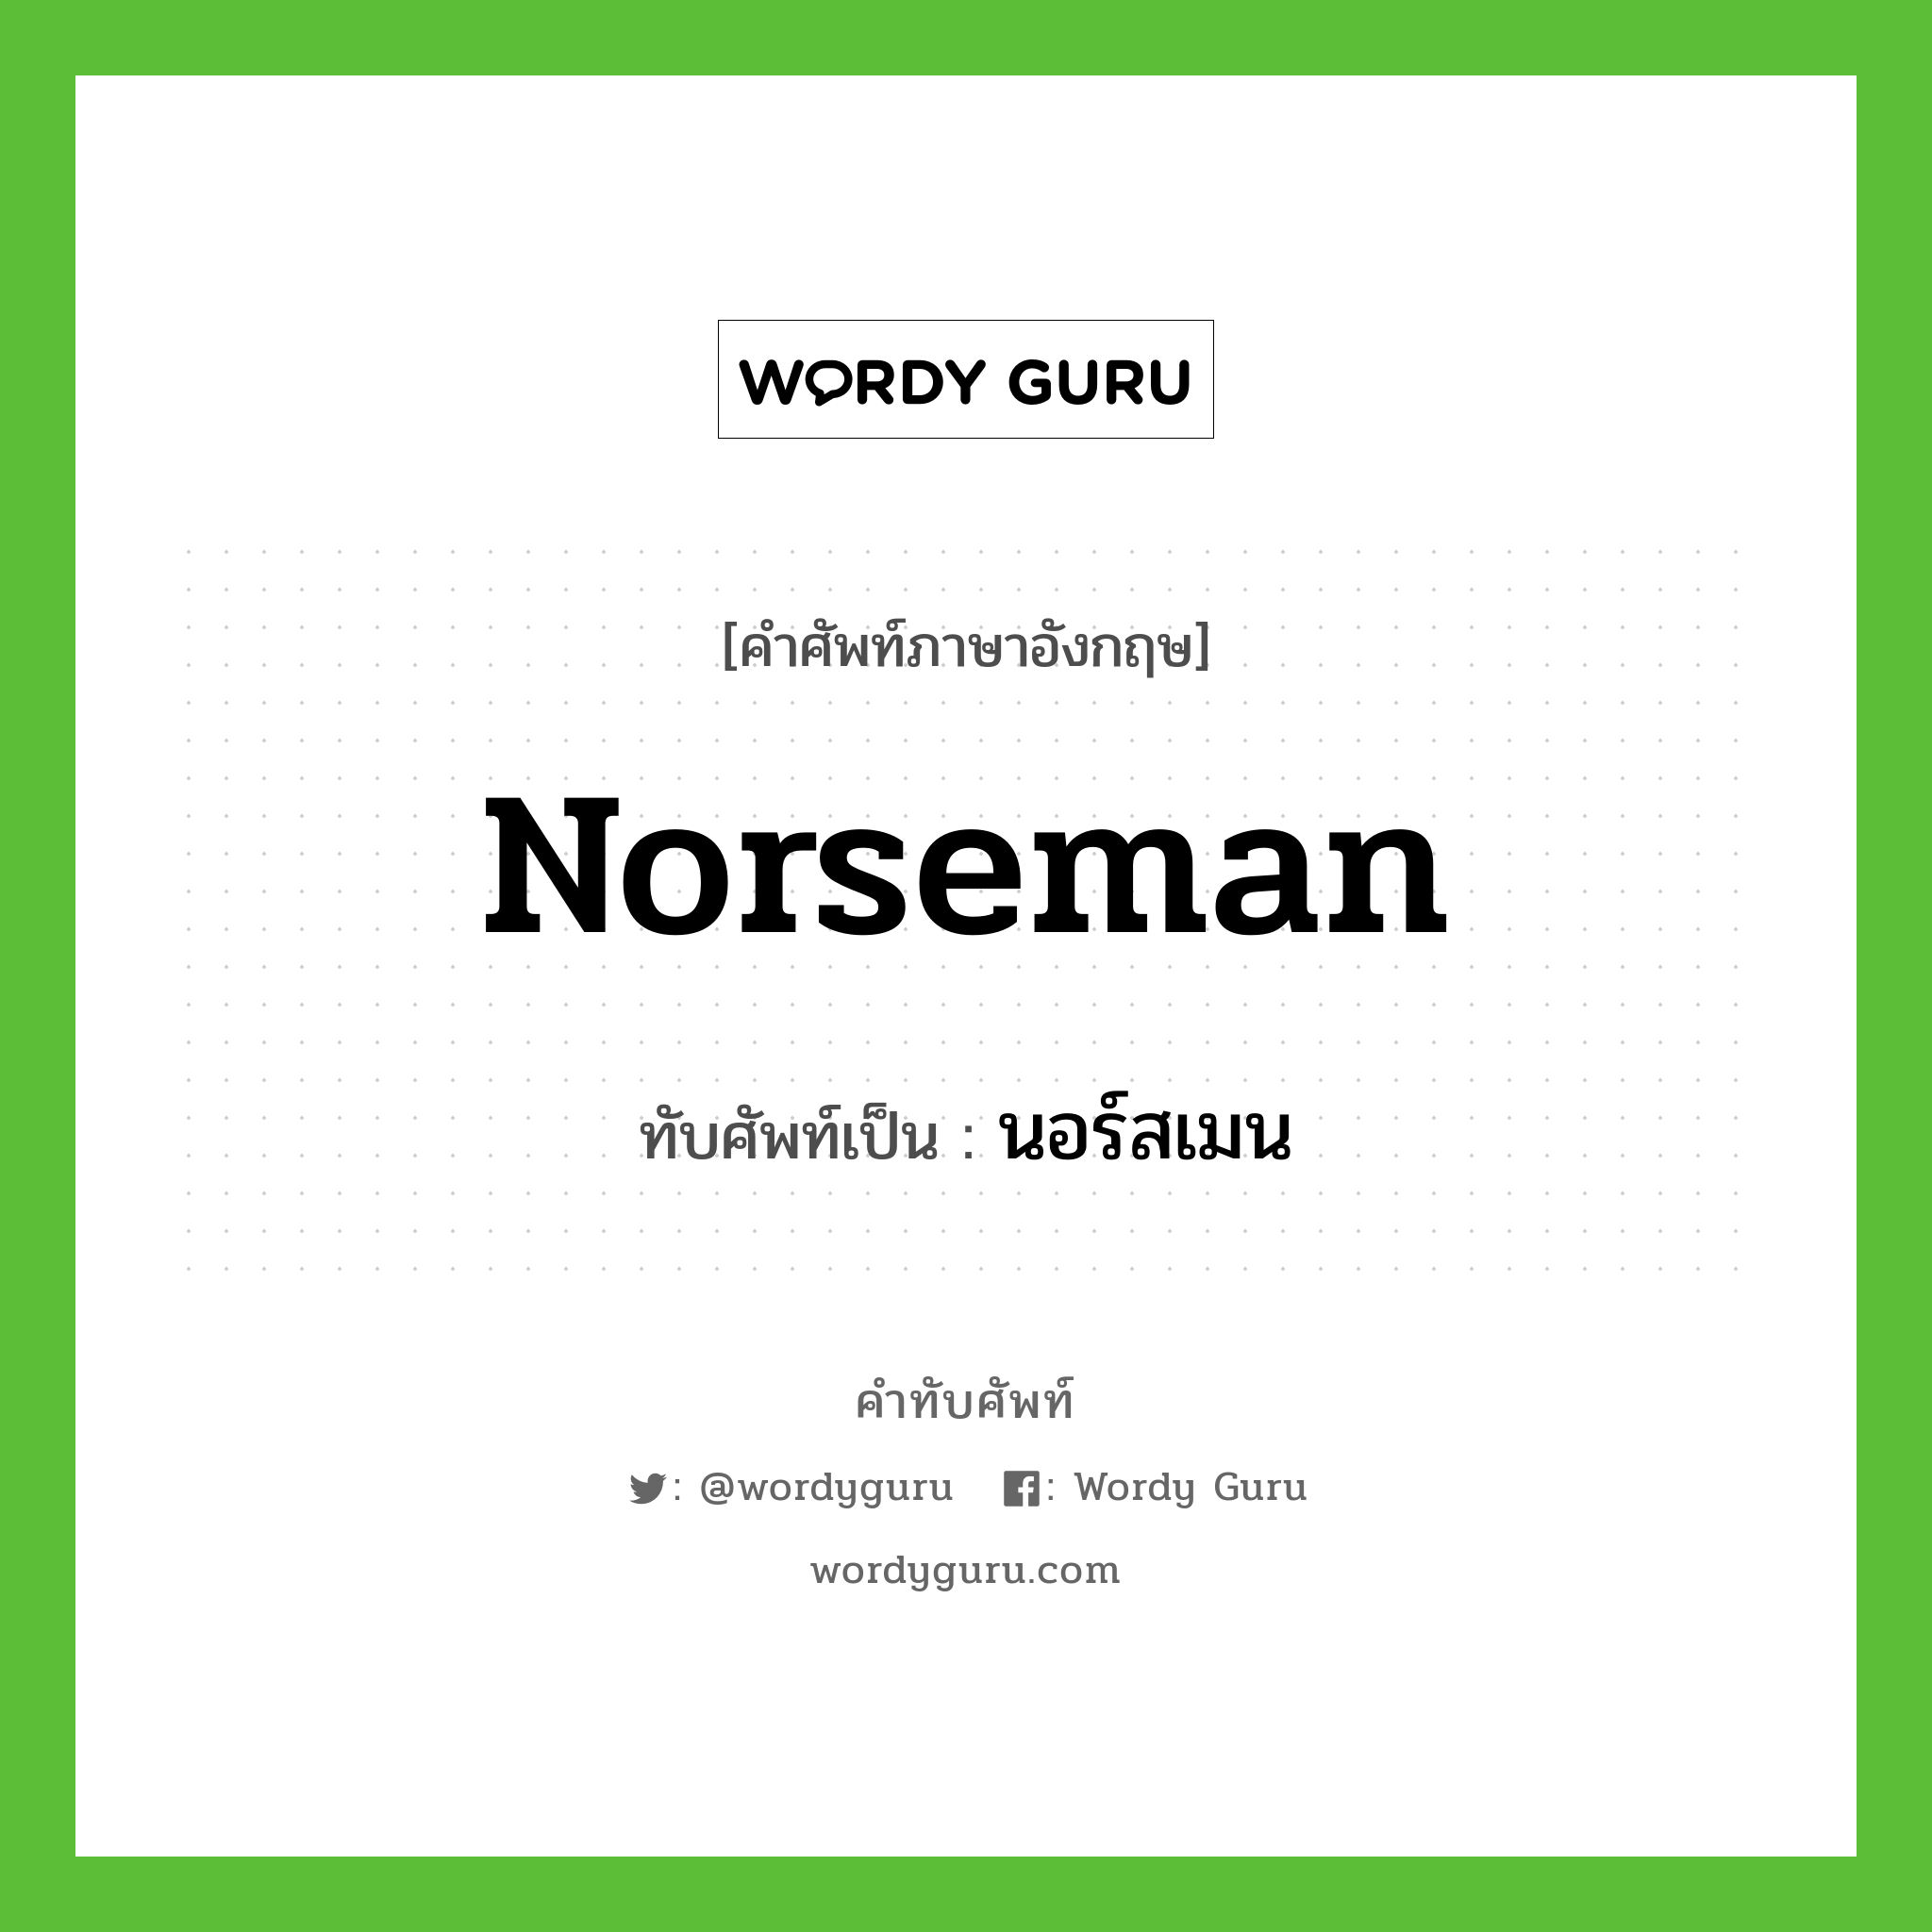 นอร์สเมน เขียนอย่างไร?, คำศัพท์ภาษาอังกฤษ นอร์สเมน ทับศัพท์เป็น Norseman